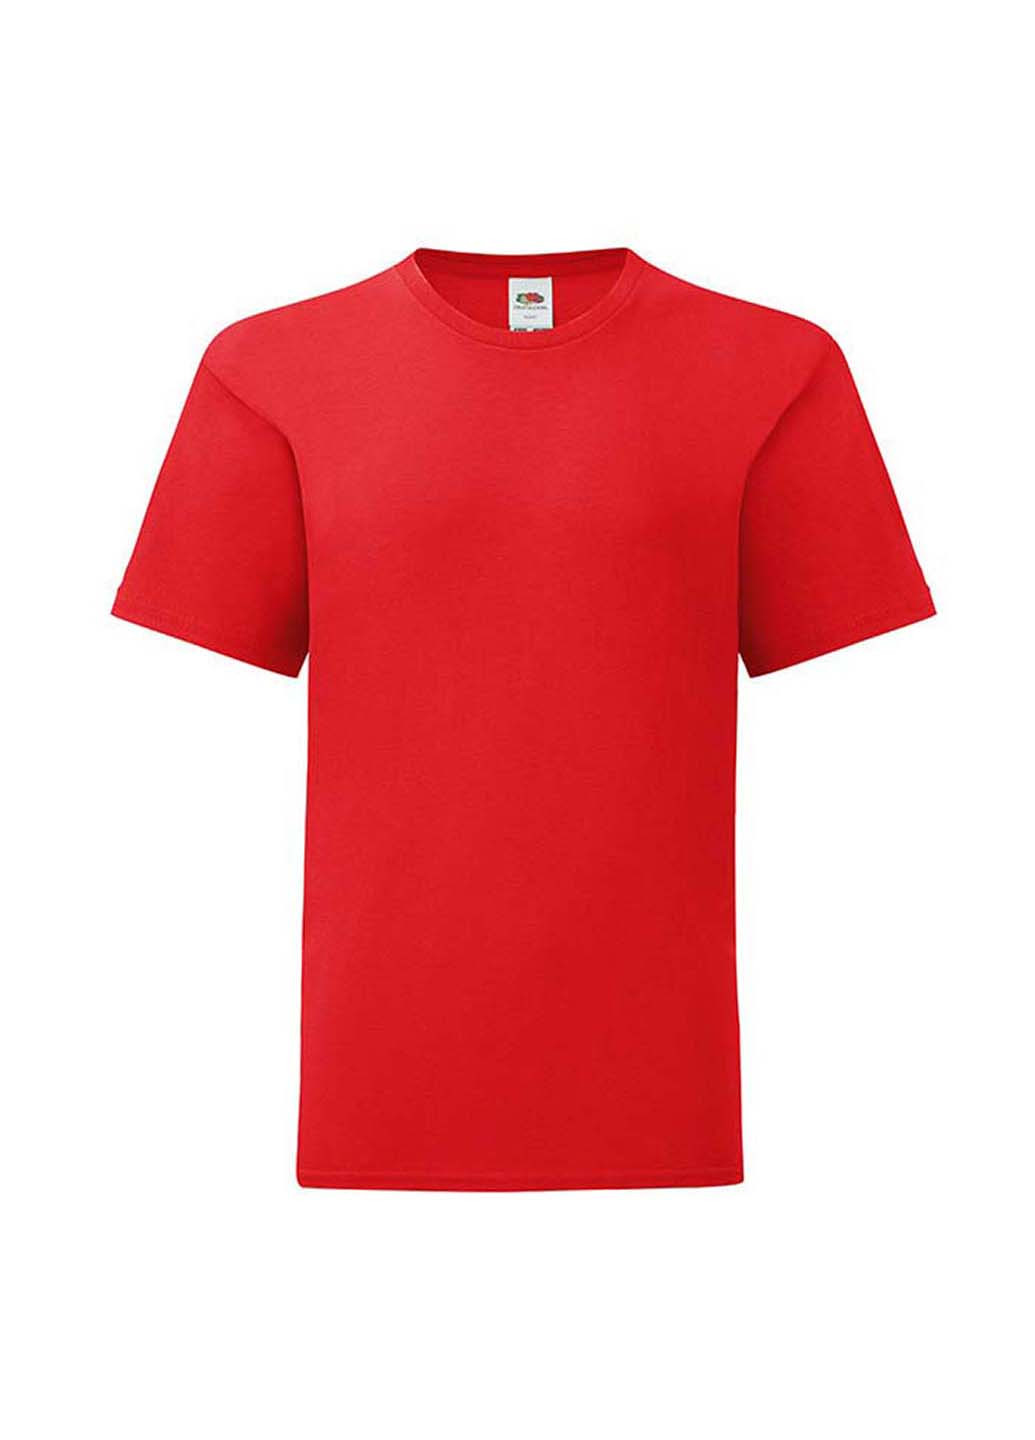 Красная демисезонная футболка Fruit of the Loom 61023040128